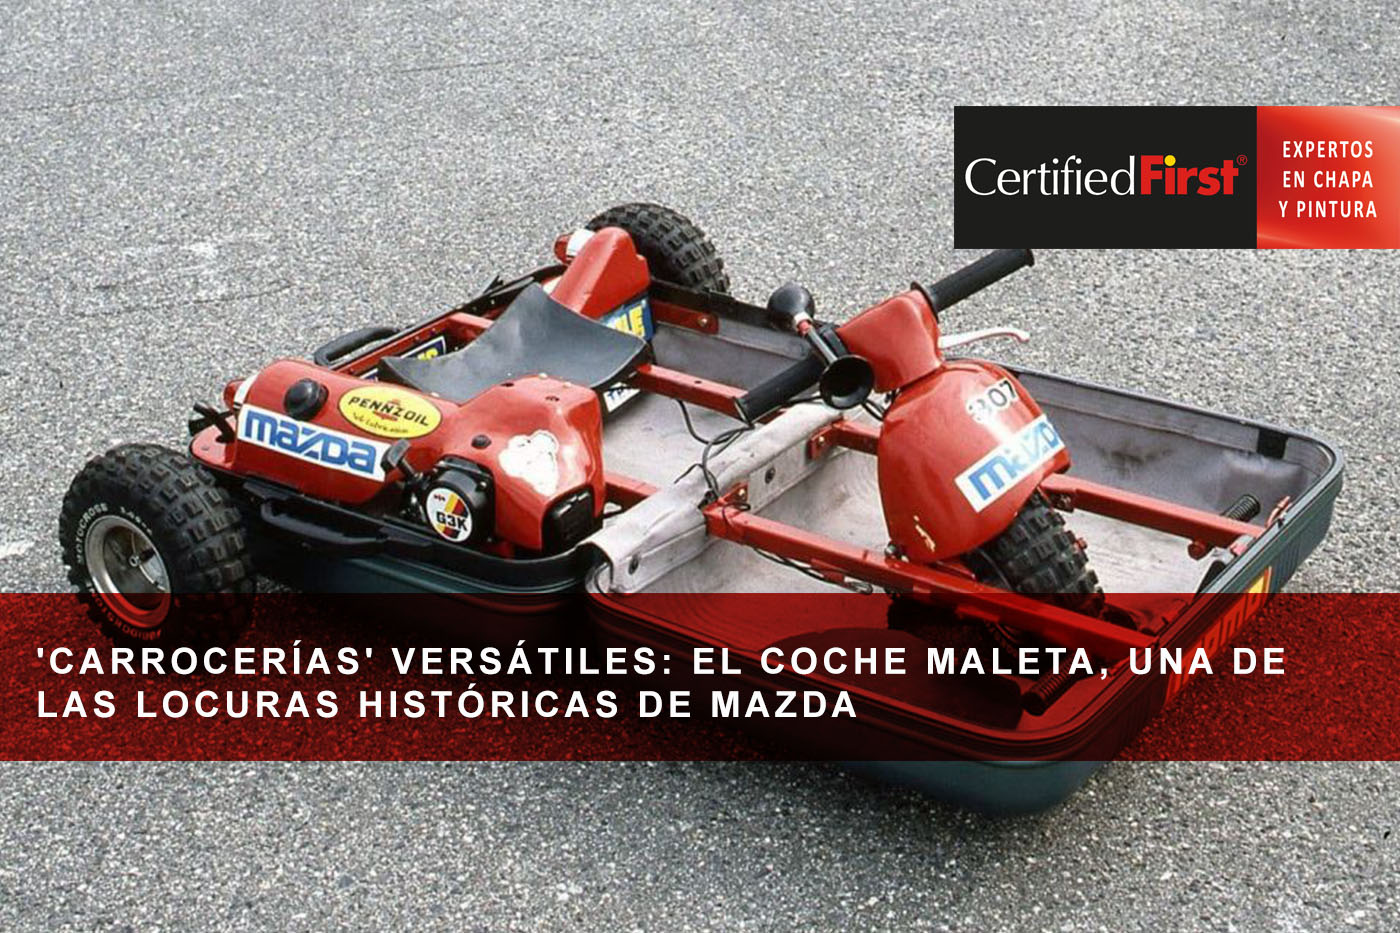 'Carrocerías' versátiles: el coche maleta, una de las locuras históricas de Mazda